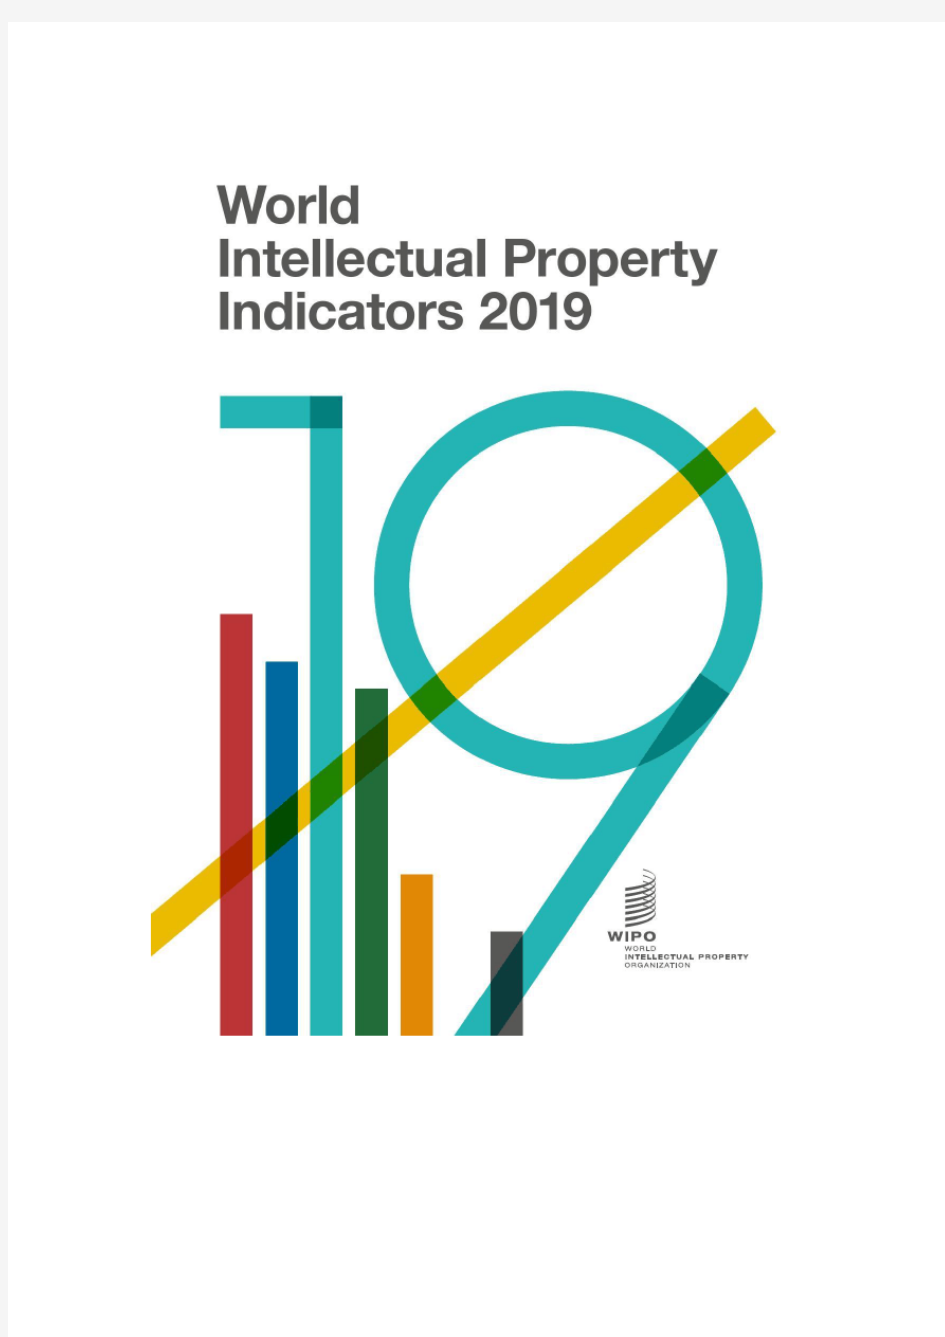 世界知识产权组织：2019年度世界知识产权指标(WIPI)报告(228页)